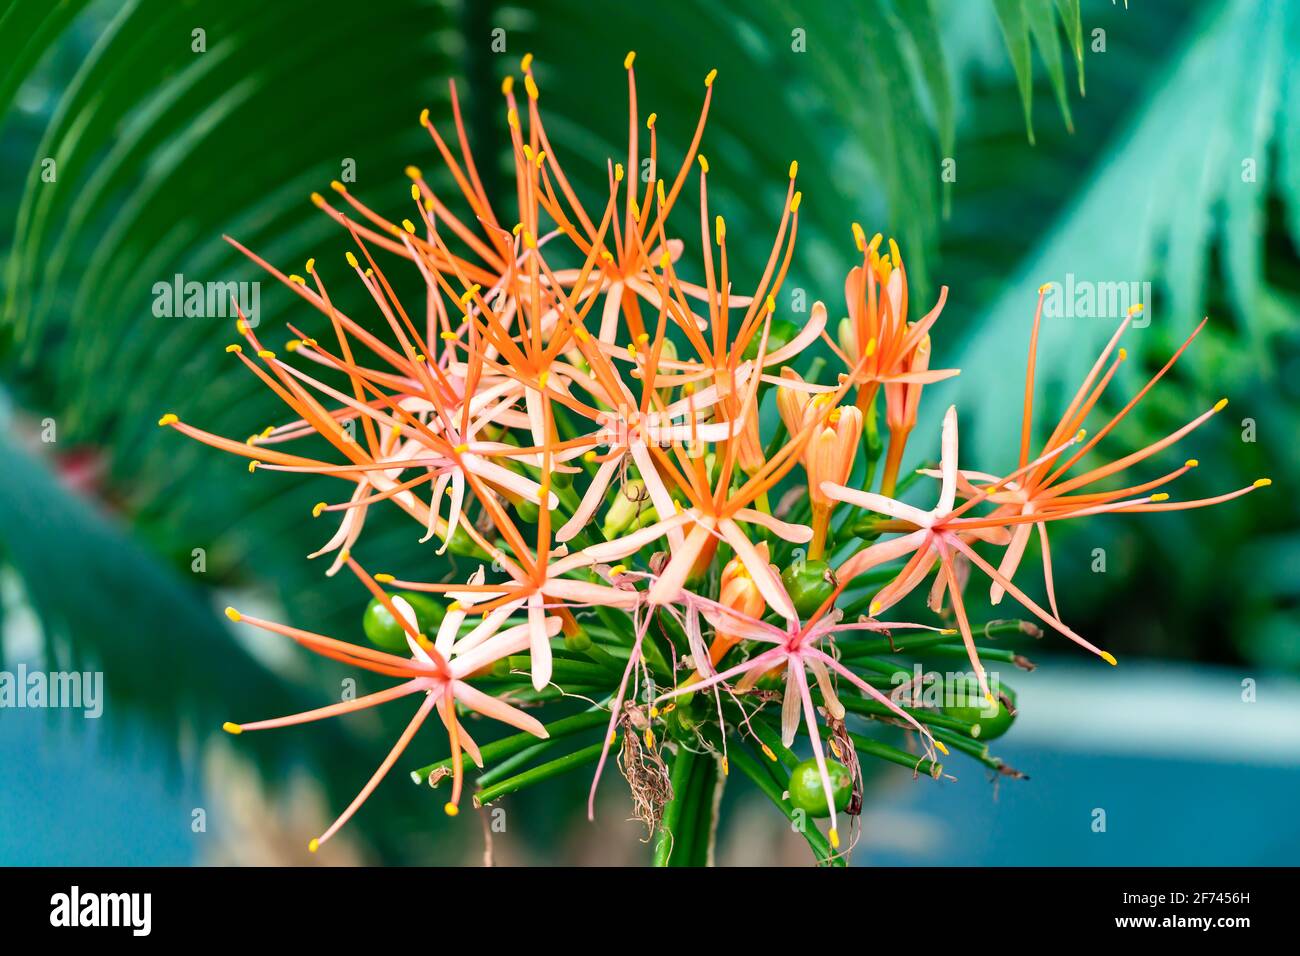 Scadoxus multiflorus, die Dezemberblume, ist eine Knollenpflanze, die aus Afrika, Senegal, stammt und sich dann nach Somalia und ins südliche Afrika ausbreitete. Stockfoto